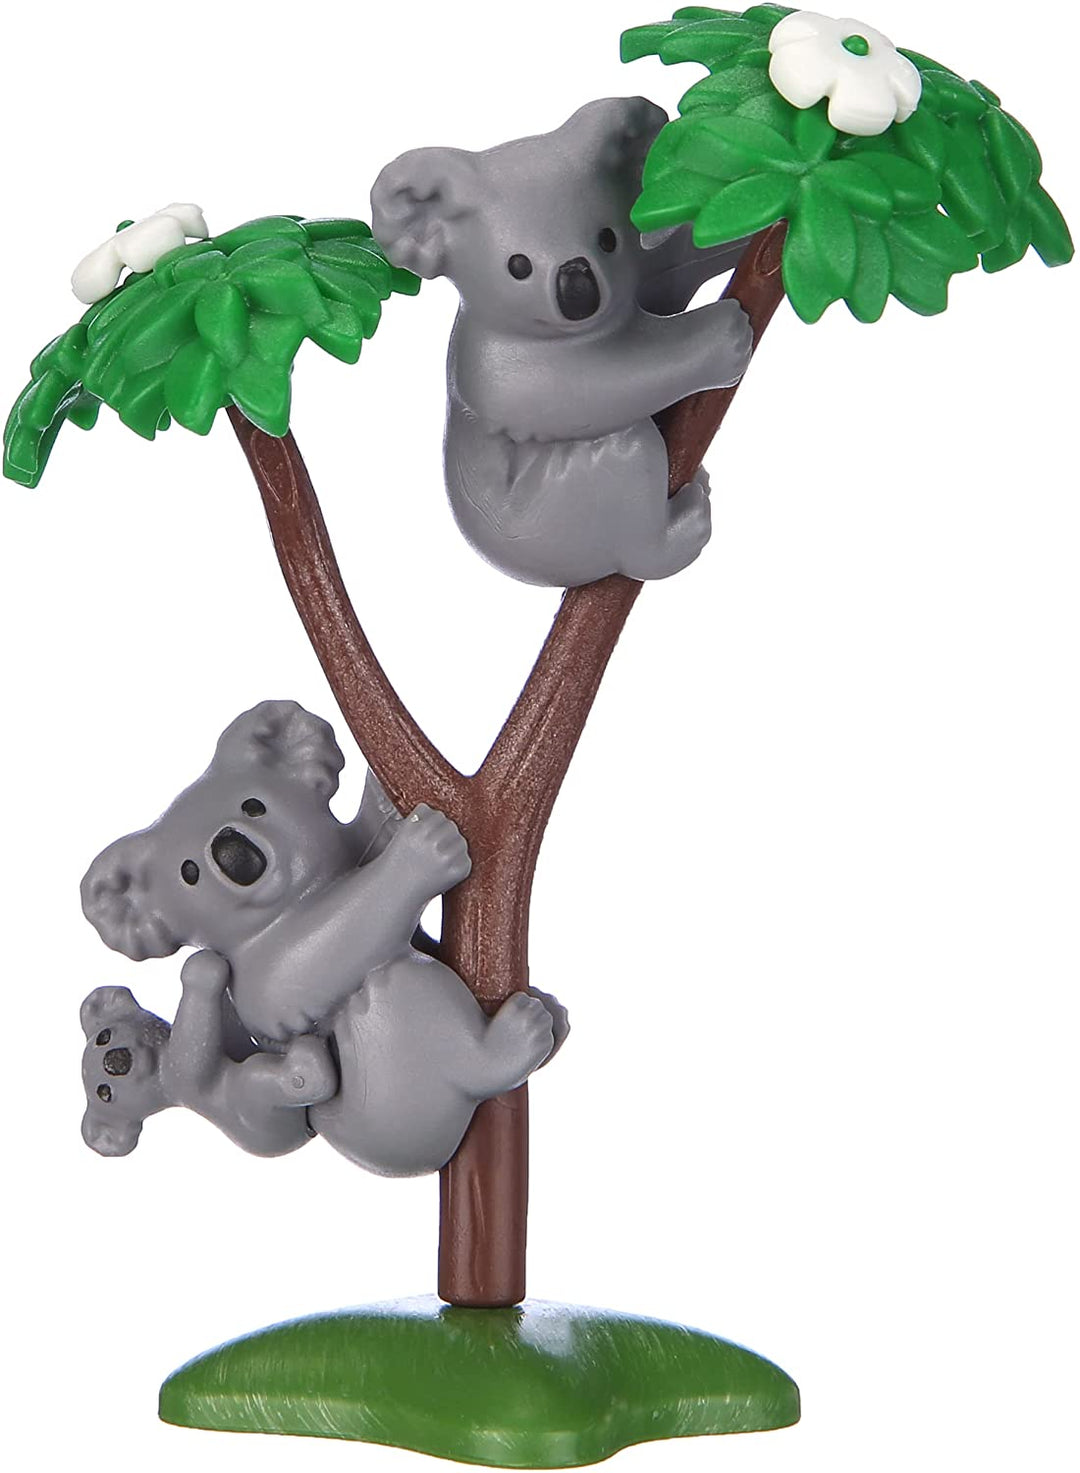 Playmobil 70352 Family Fun Koalas with Baby